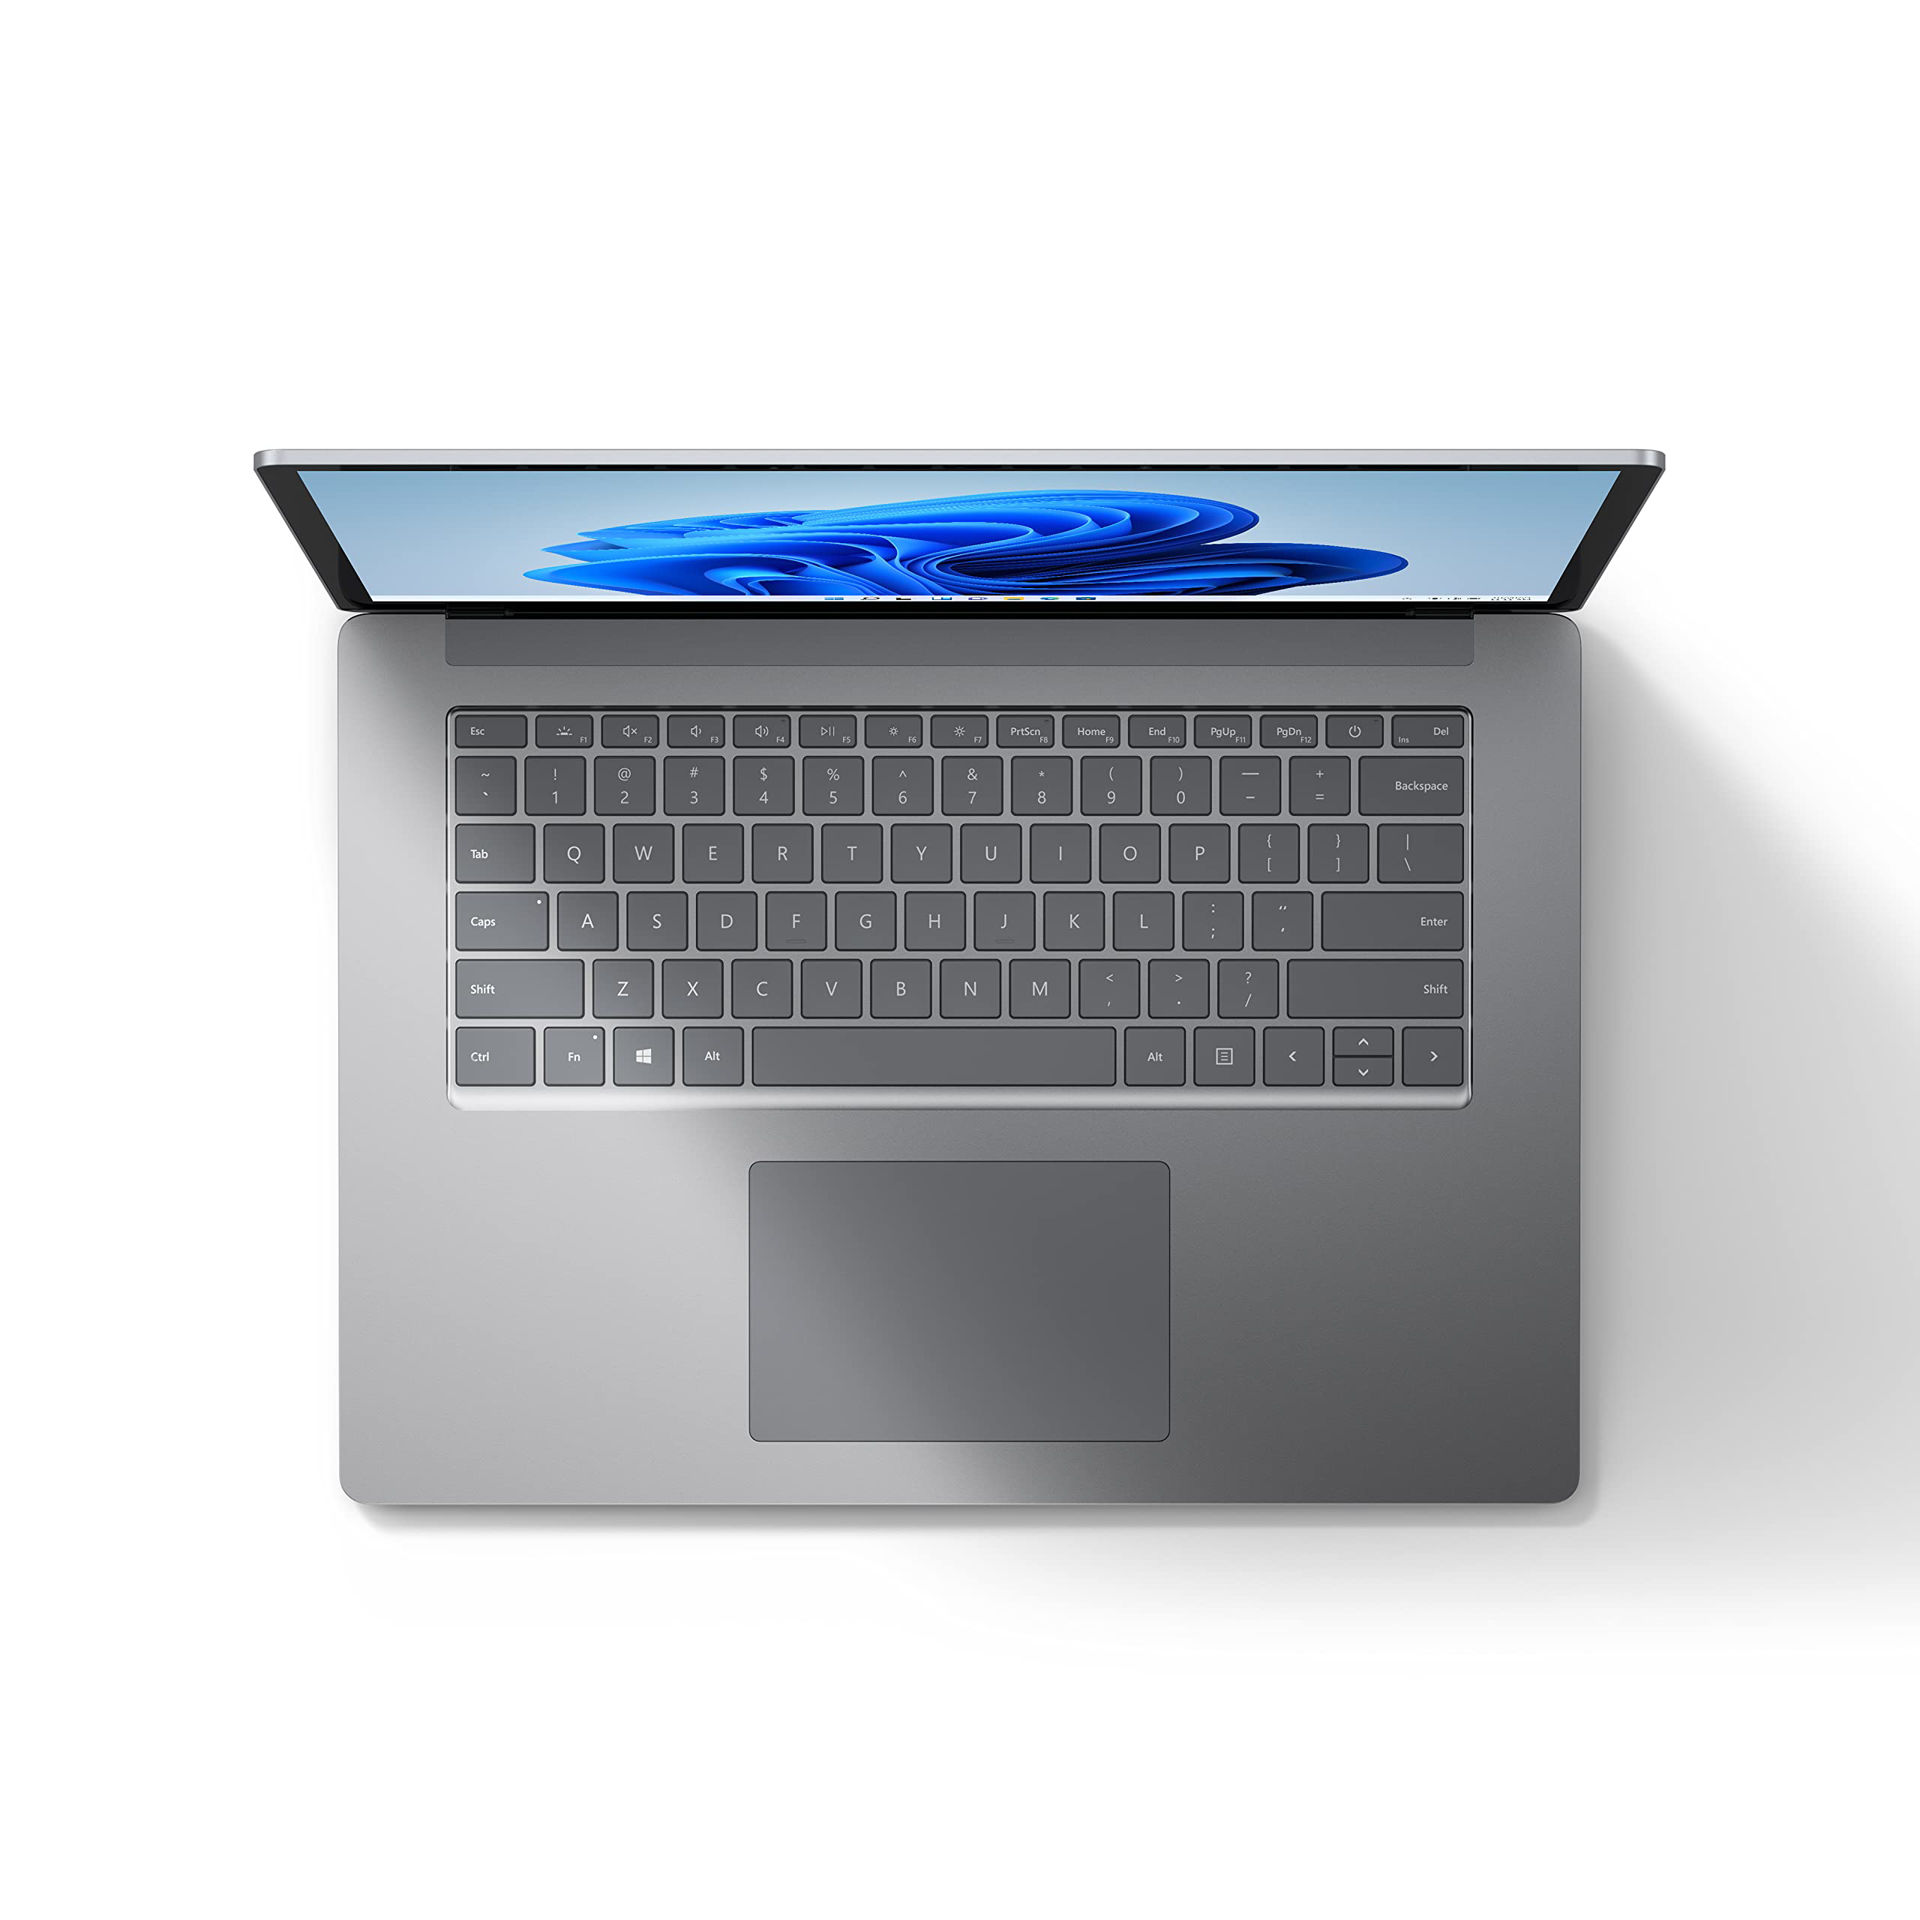 سرفیس لپ تاپ 4 – Surface Laptop 4 – 13.5 inch / Core i5 / RAM 8GB /512GB SSD